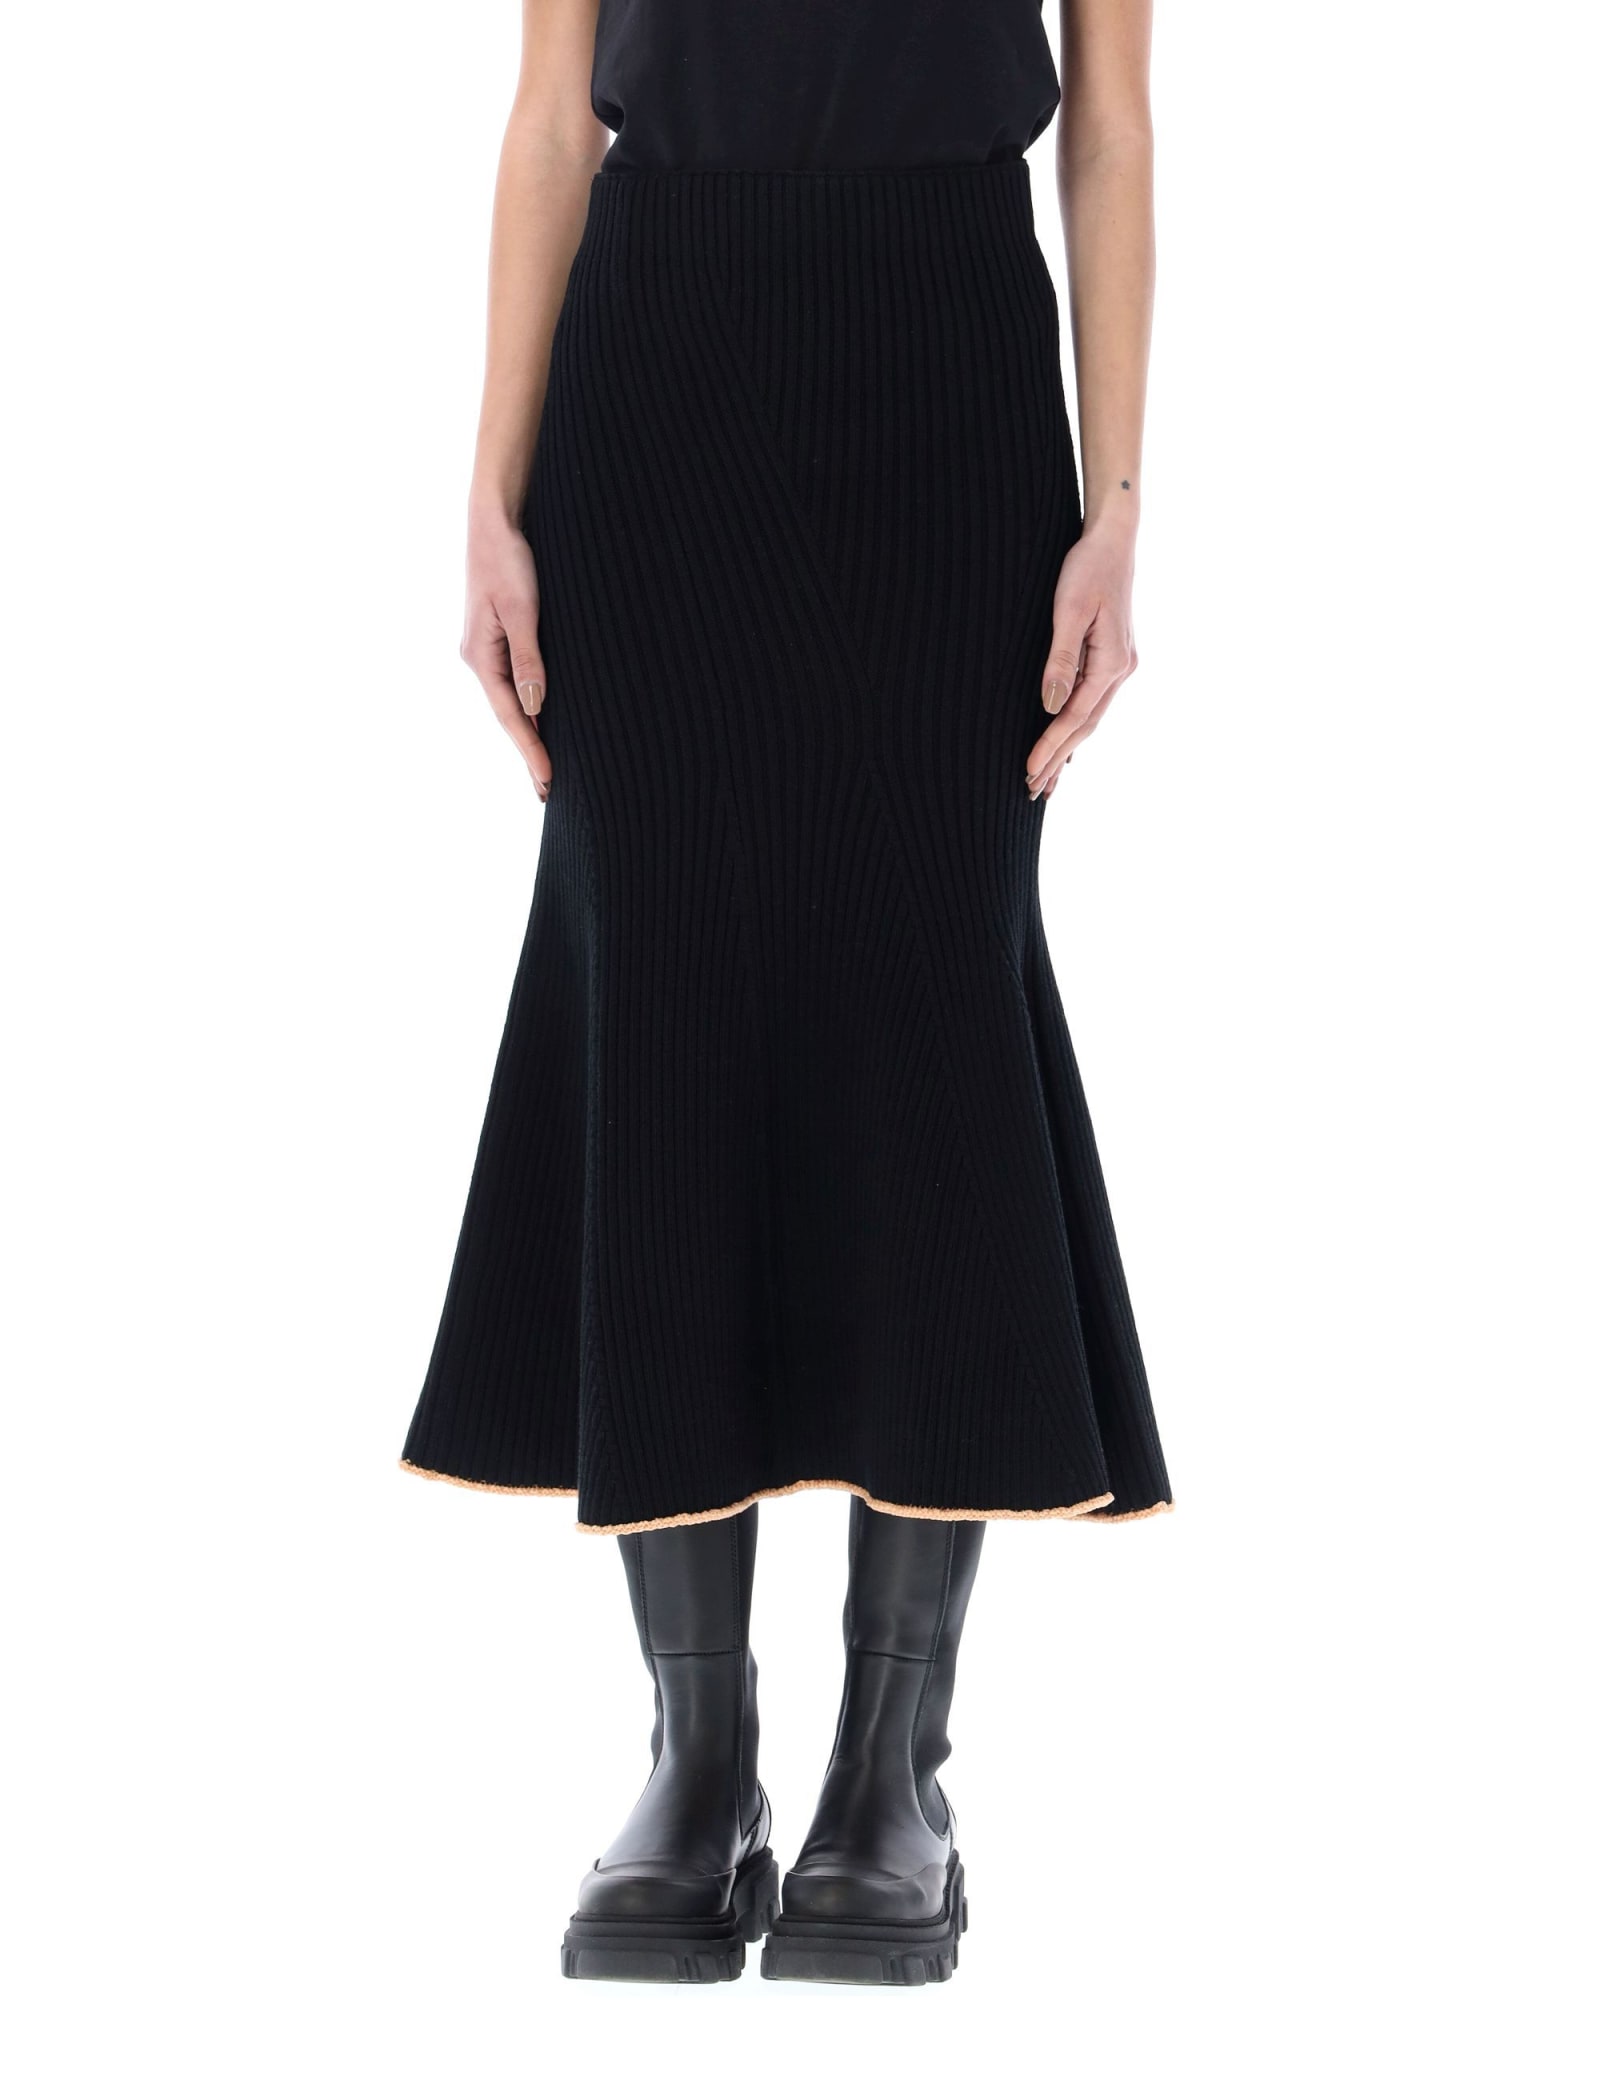 Moncler Genius Knitted Skirt